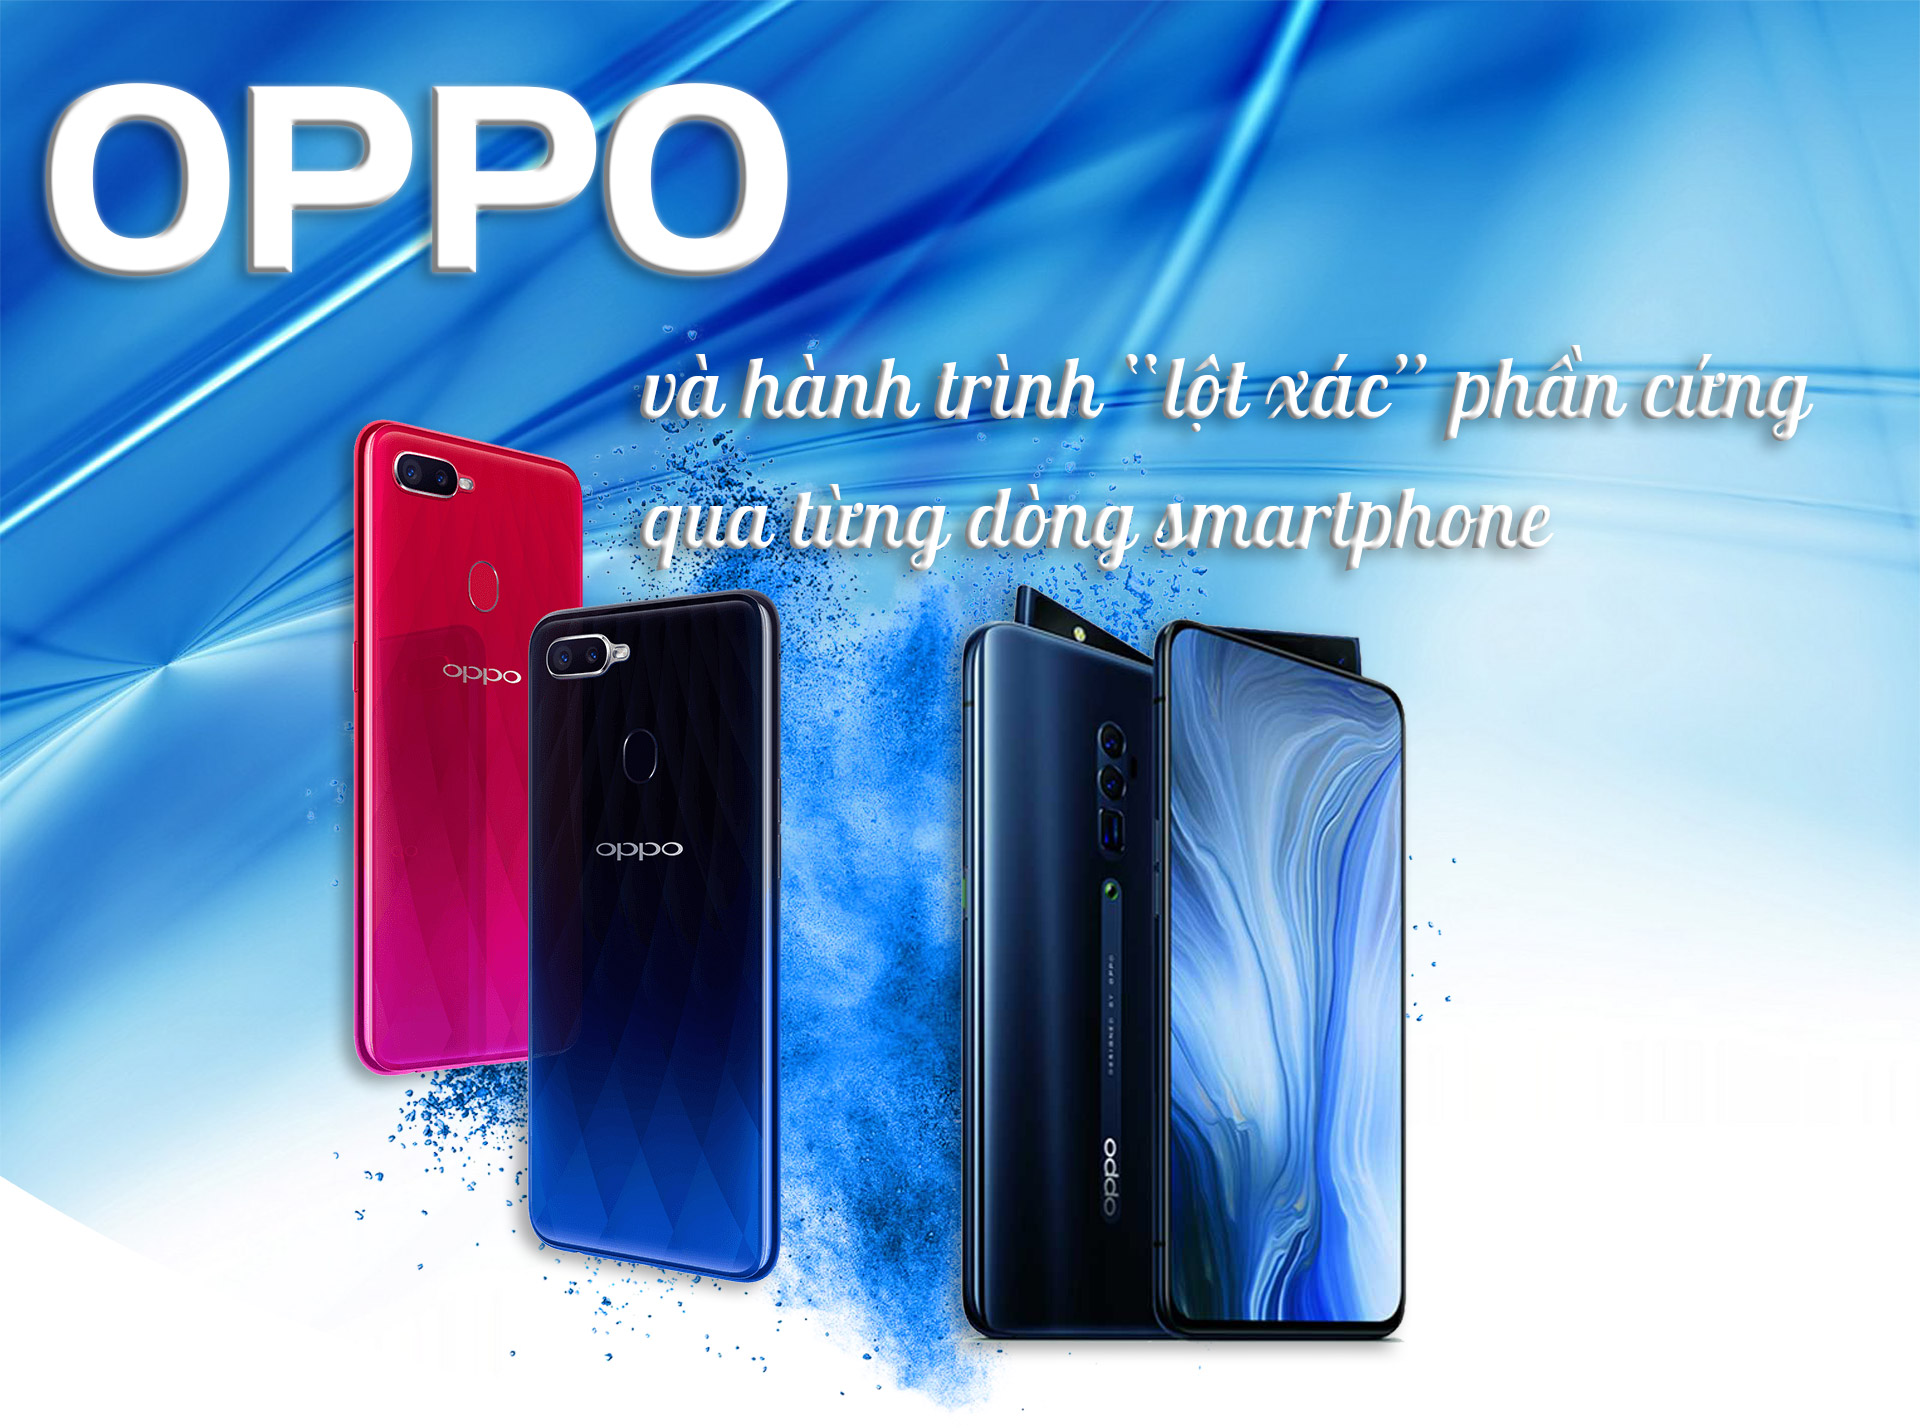 OPPO và hành trình “lột xác” phần cứng qua từng dòng smartphone - 1